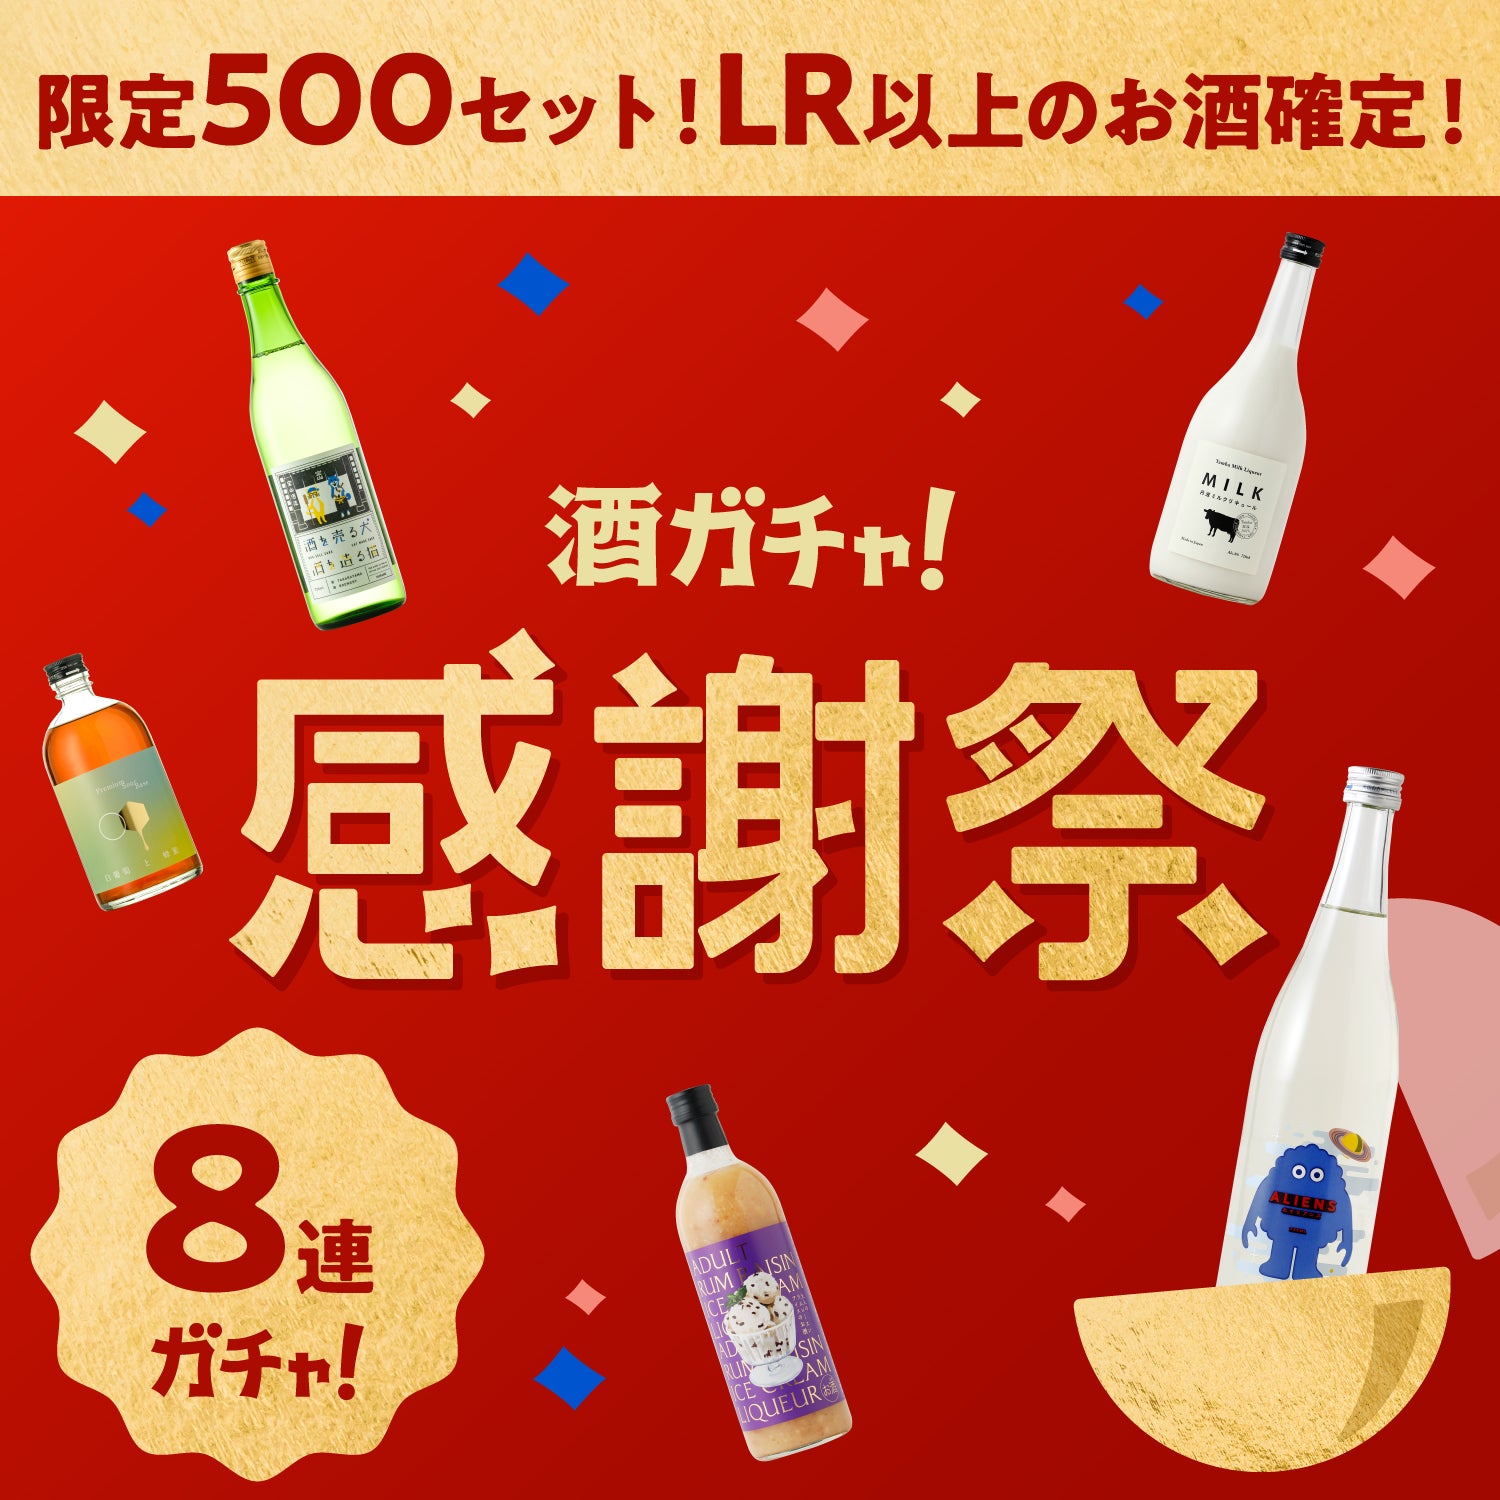 【限定500セット】感謝祭プレミアム8連酒ガチャ